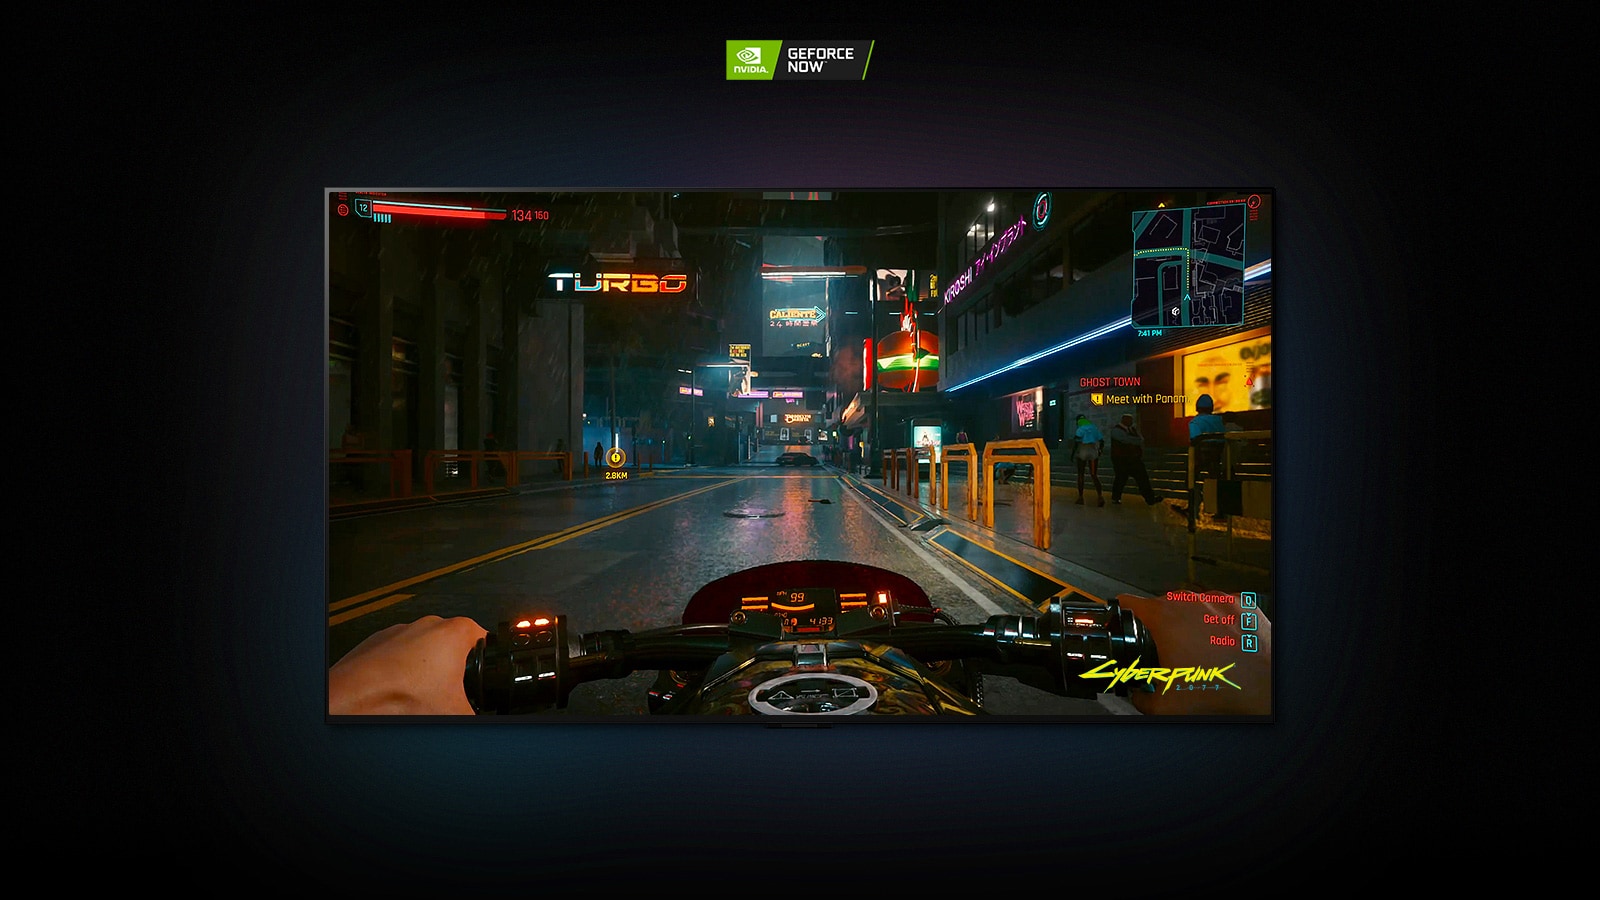 W scenie z gry Cyberpunk 2077 pokazanej na ekranie telewizora LG OLED gracz jedzie oświetloną neonami ulicą na motocyklu